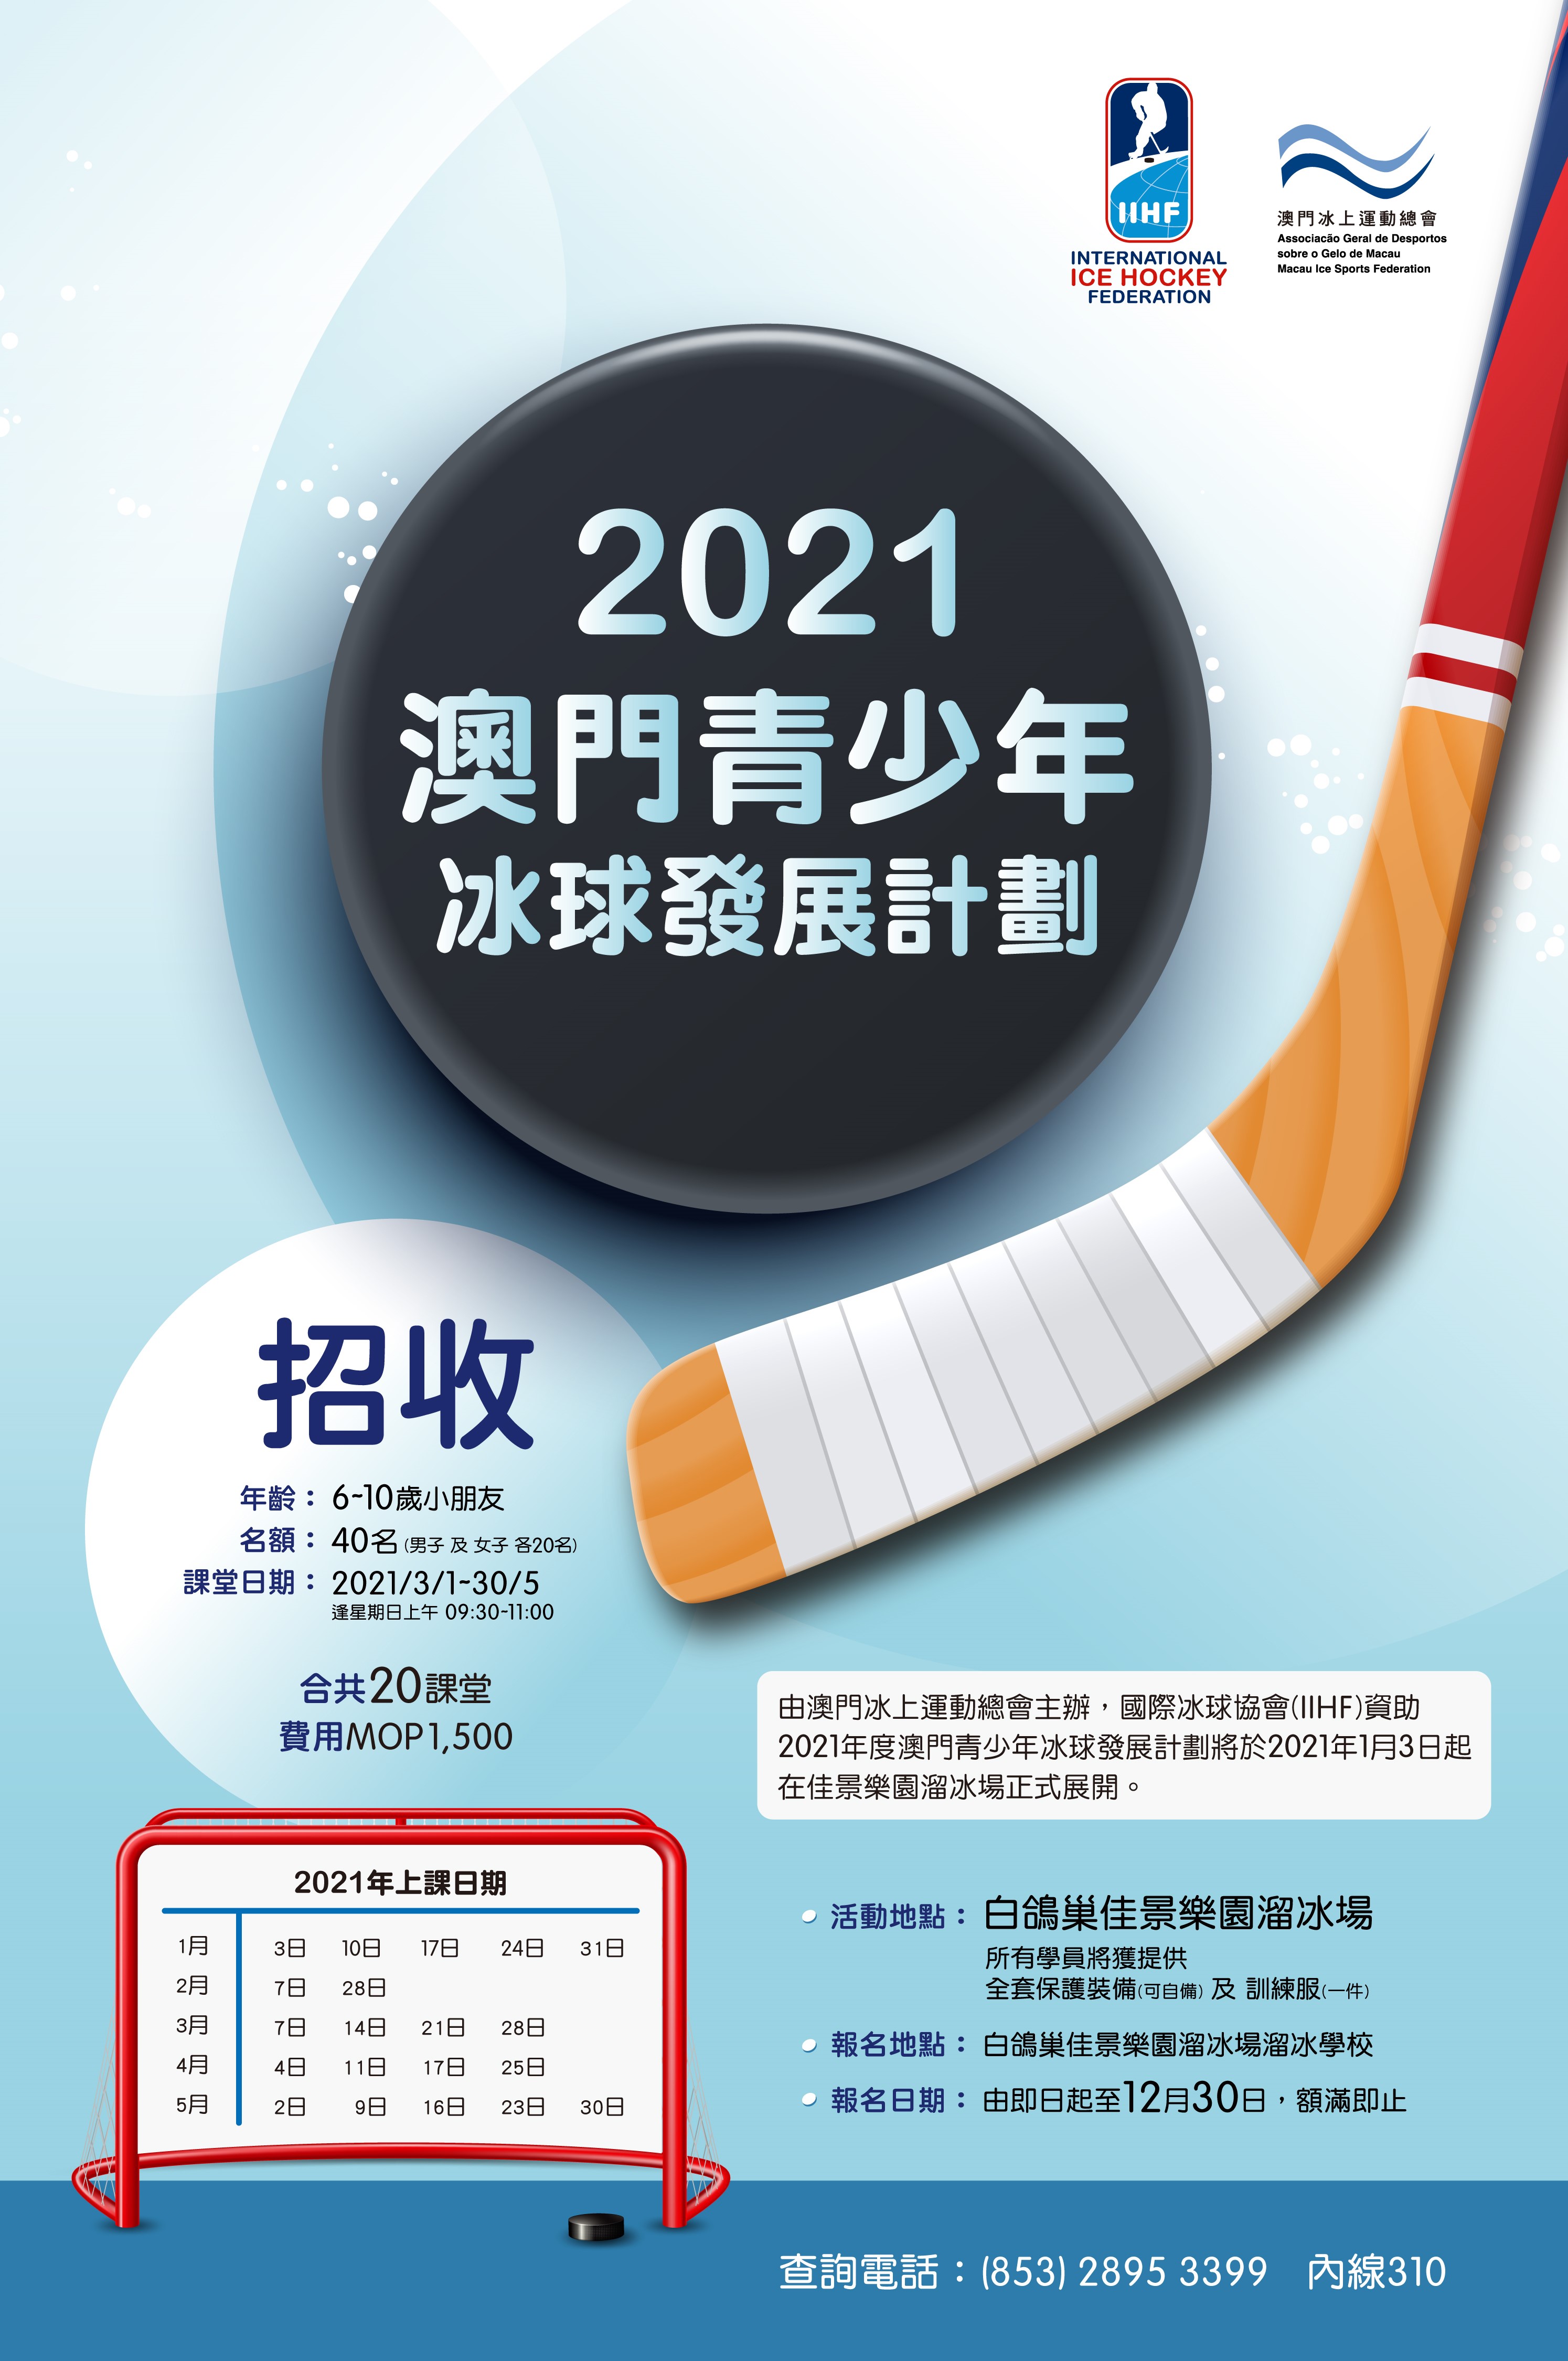 2021澳門青少年冰球發展計劃